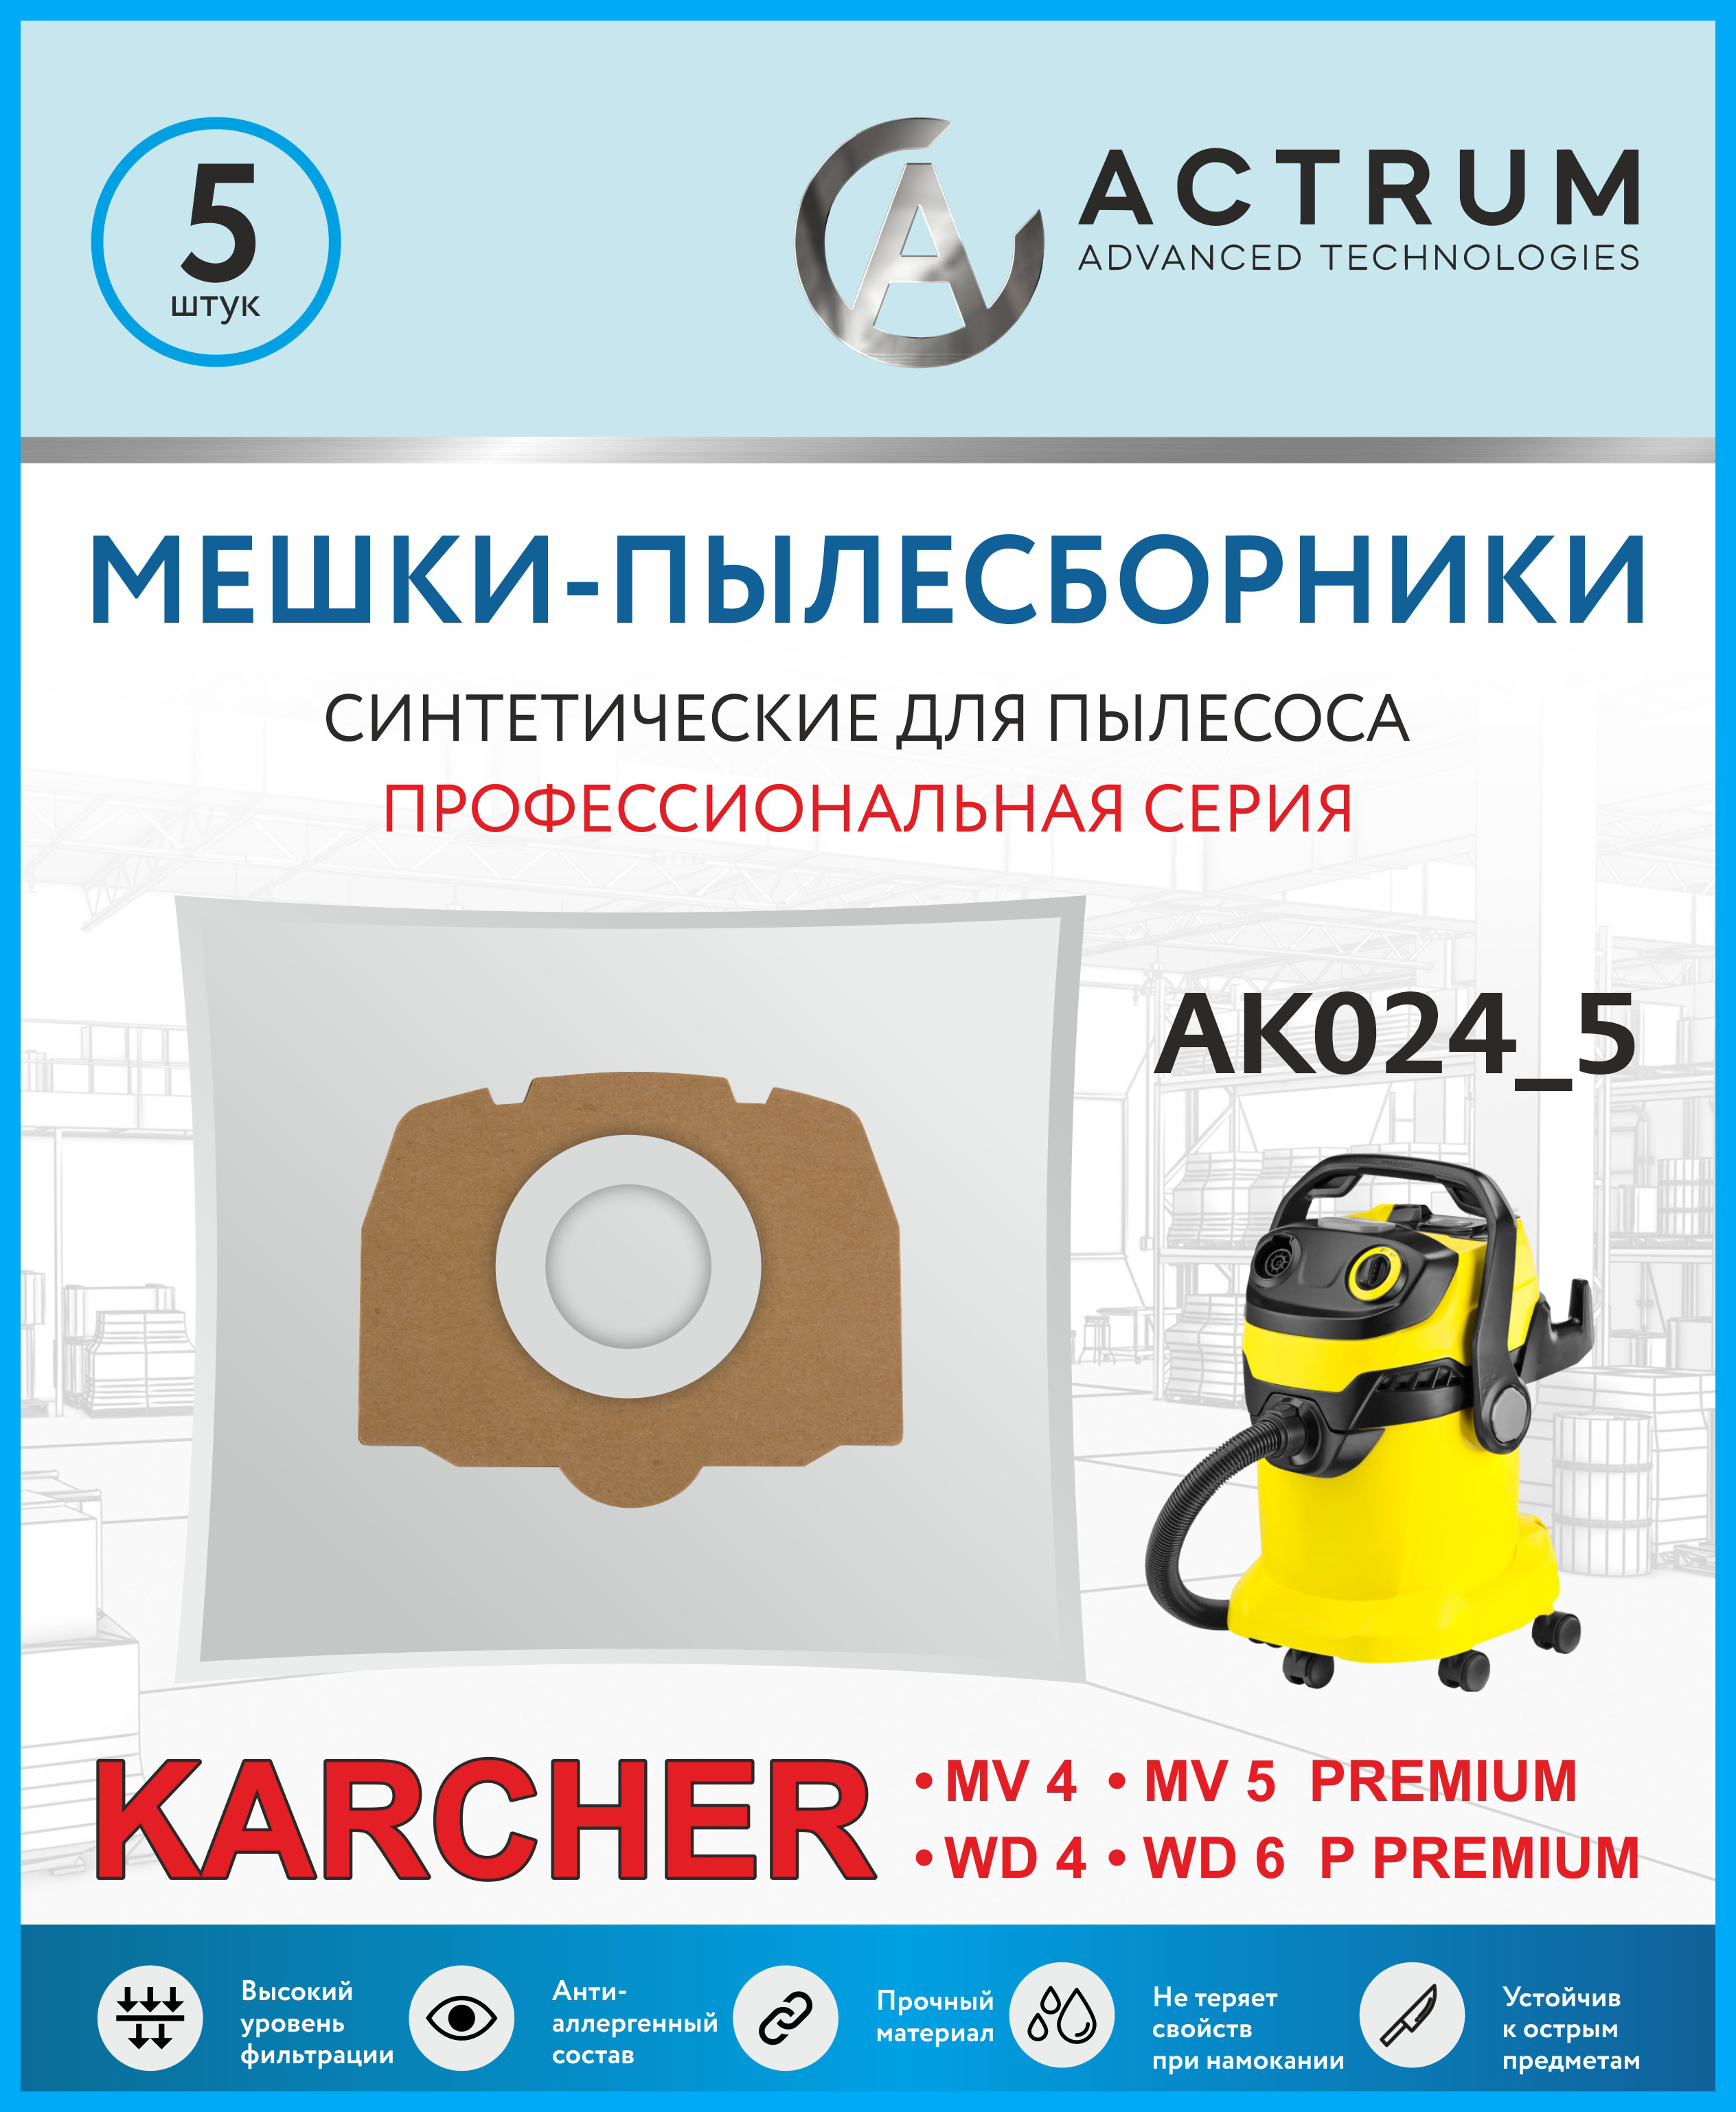 пылесборники actrum ak020 Пылесборники Actrum AK024_5 для промышленных пылесосов KARCHER MV 4, MV 5, WD 4, WD 5